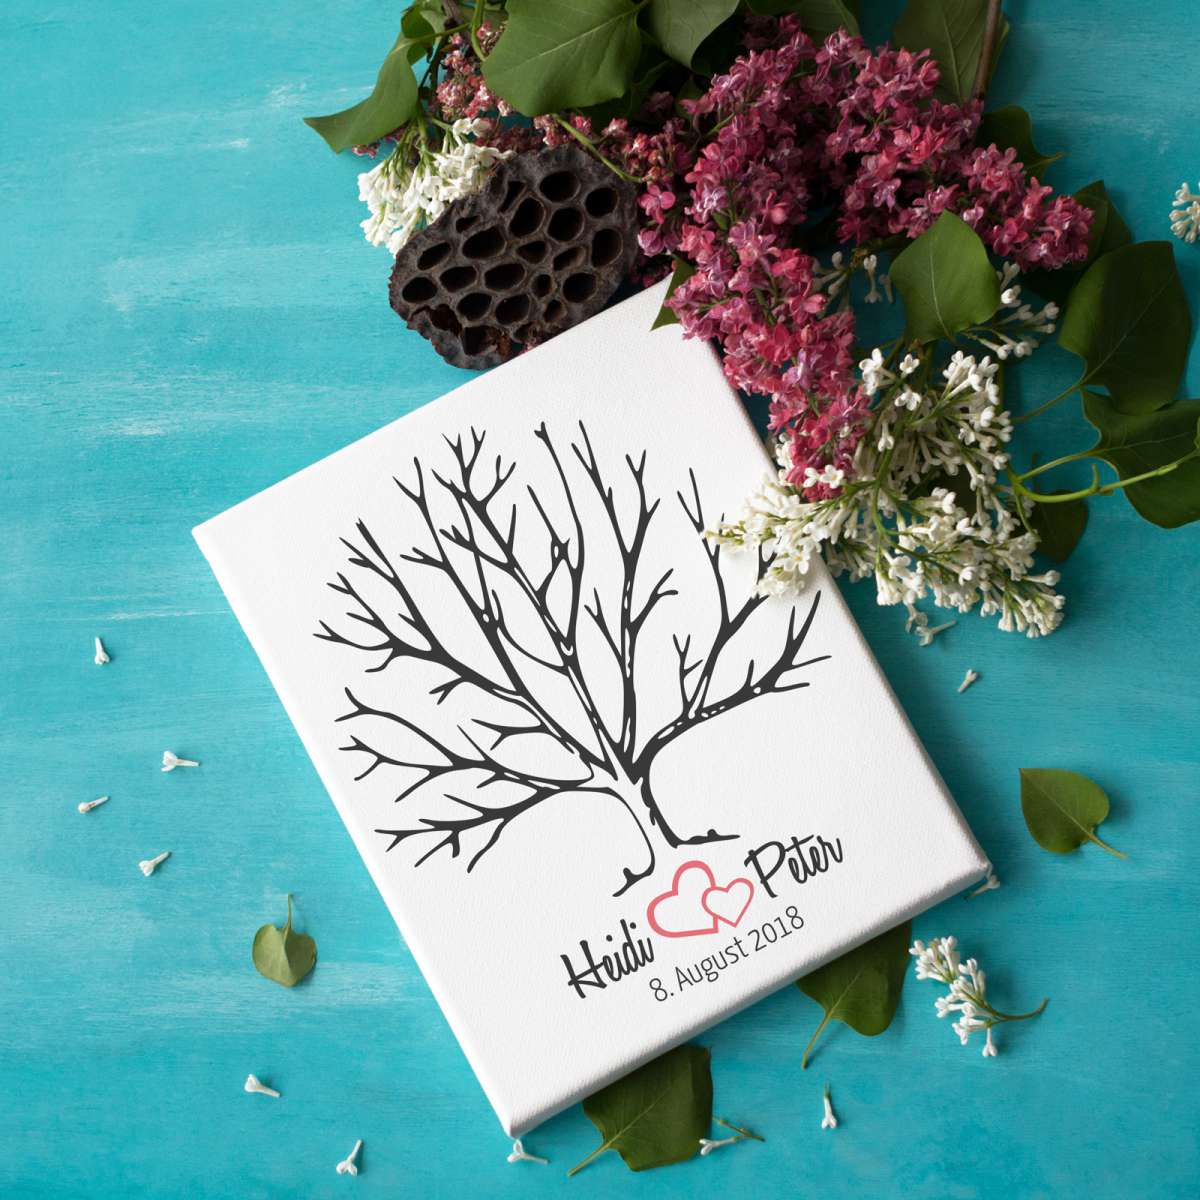 Personalisierter Hochzeitsbaum Fingerabdruck / Wedding Tree auf Leinwand - geeignet als Hochzeitsspiel oder Geschenk zur Hochzeit - Gästebuch Hochzeit